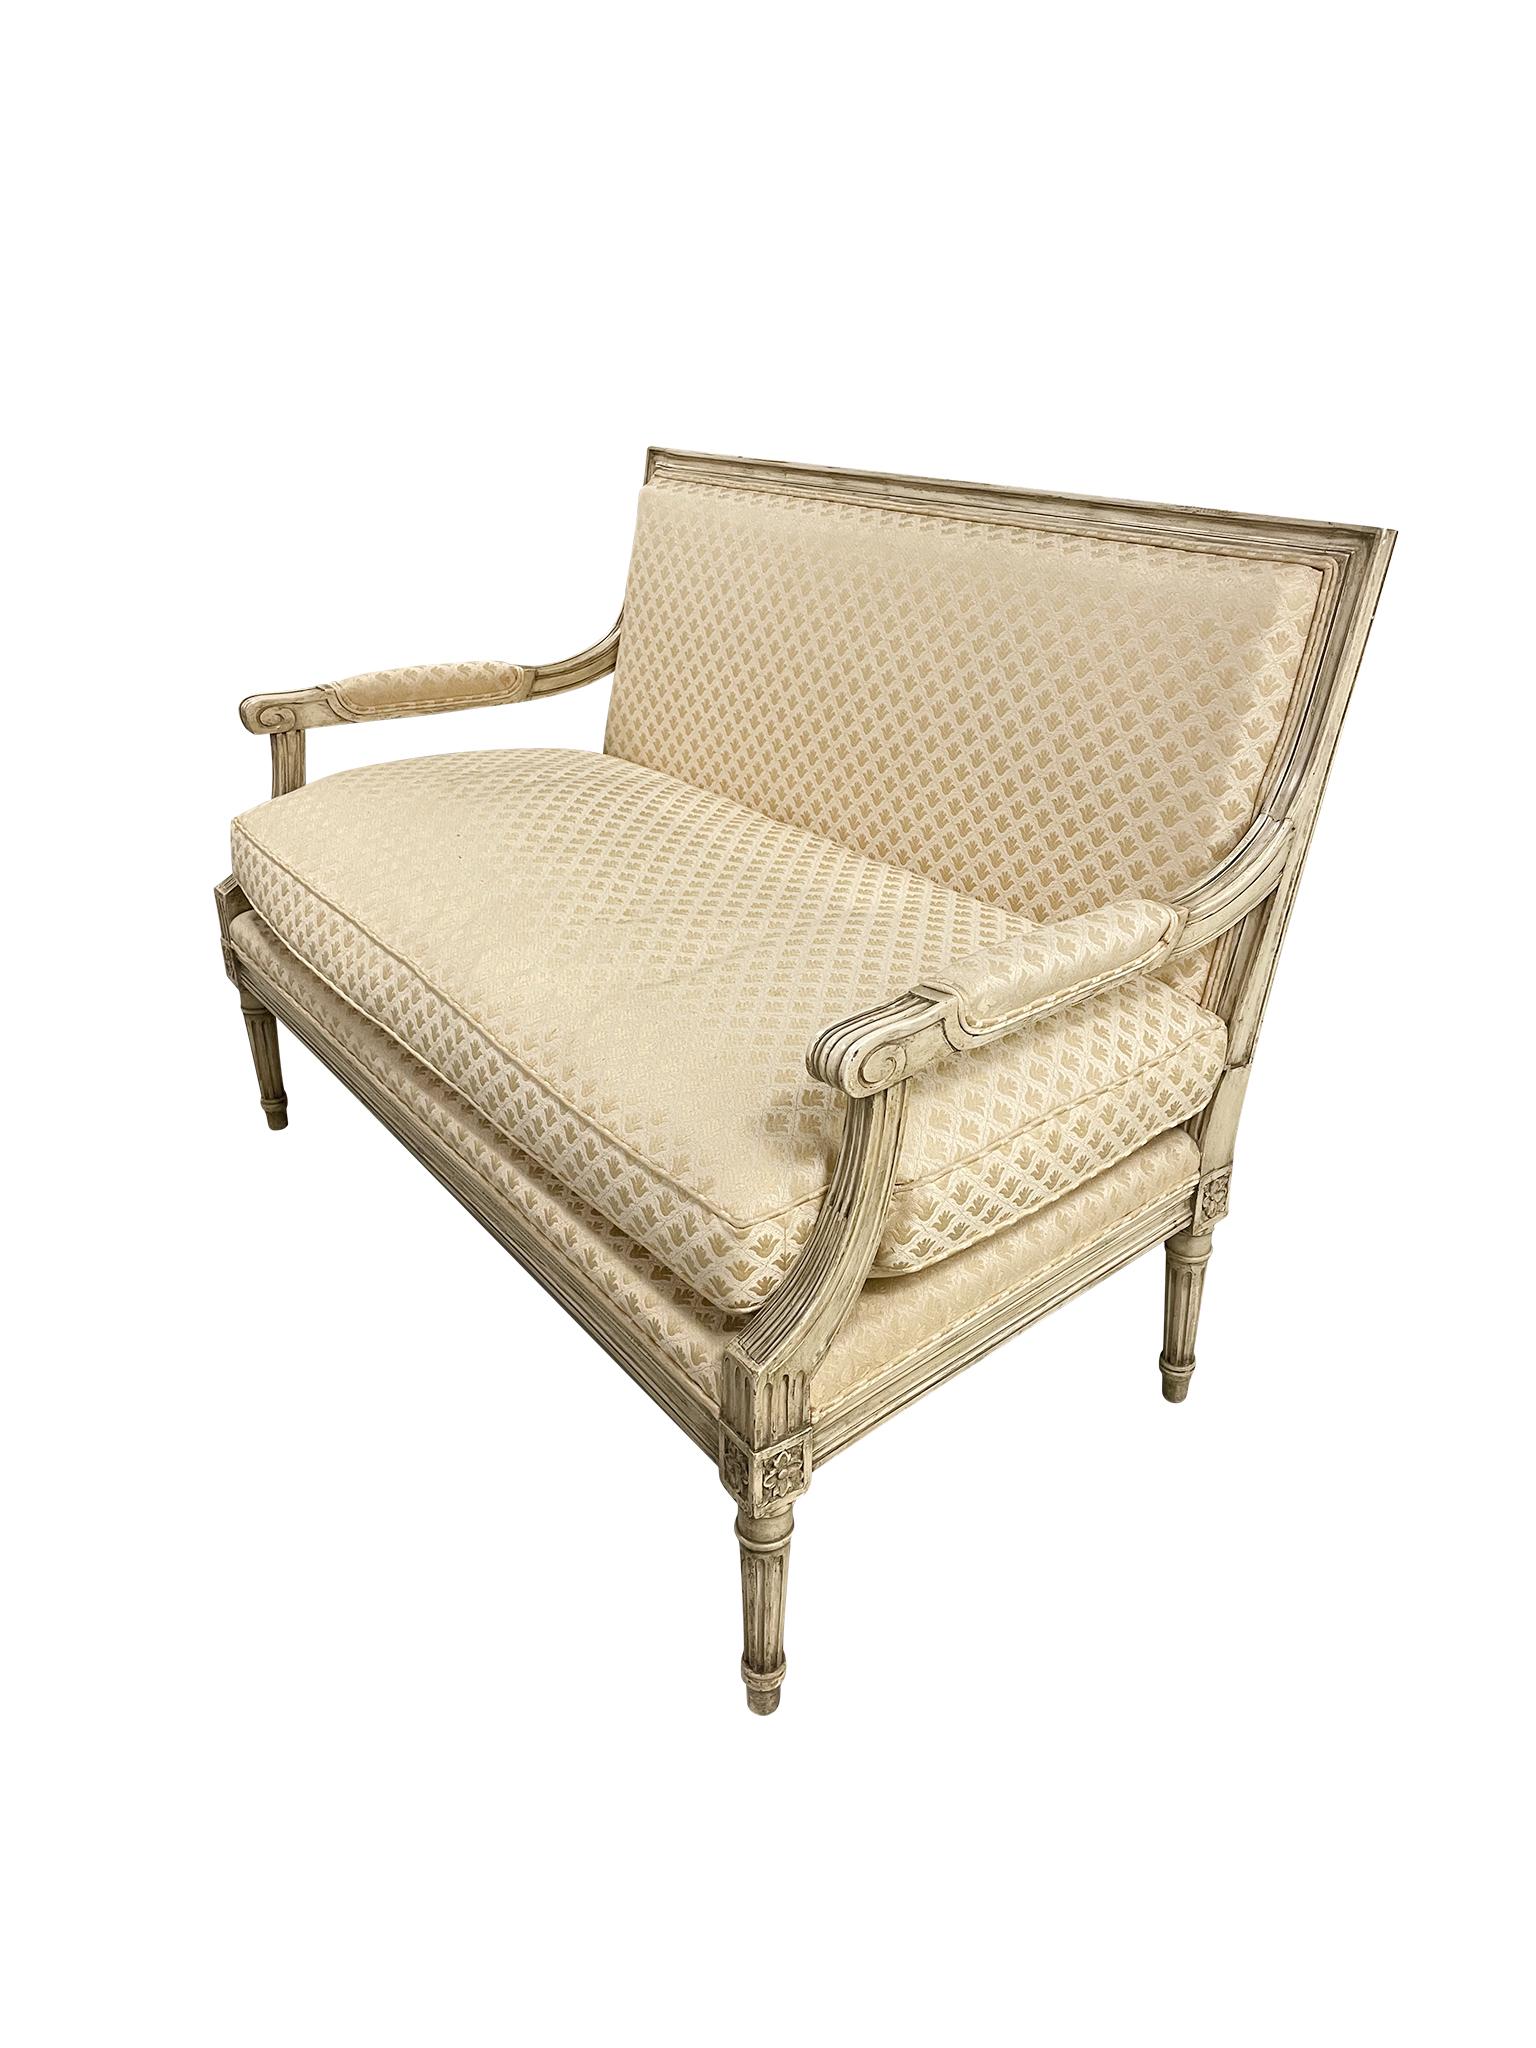 Dieses klassische Sofa im Louis-XVI-Stil wurde in den 1920er Jahren hergestellt. Er besteht aus einem lackierten Holzrahmen, der mit einem Stoff mit Fleur-de-Lis-Muster gepolstert ist. Die Armlehnen sind mit demselben Stoff gepolstert und treffen in